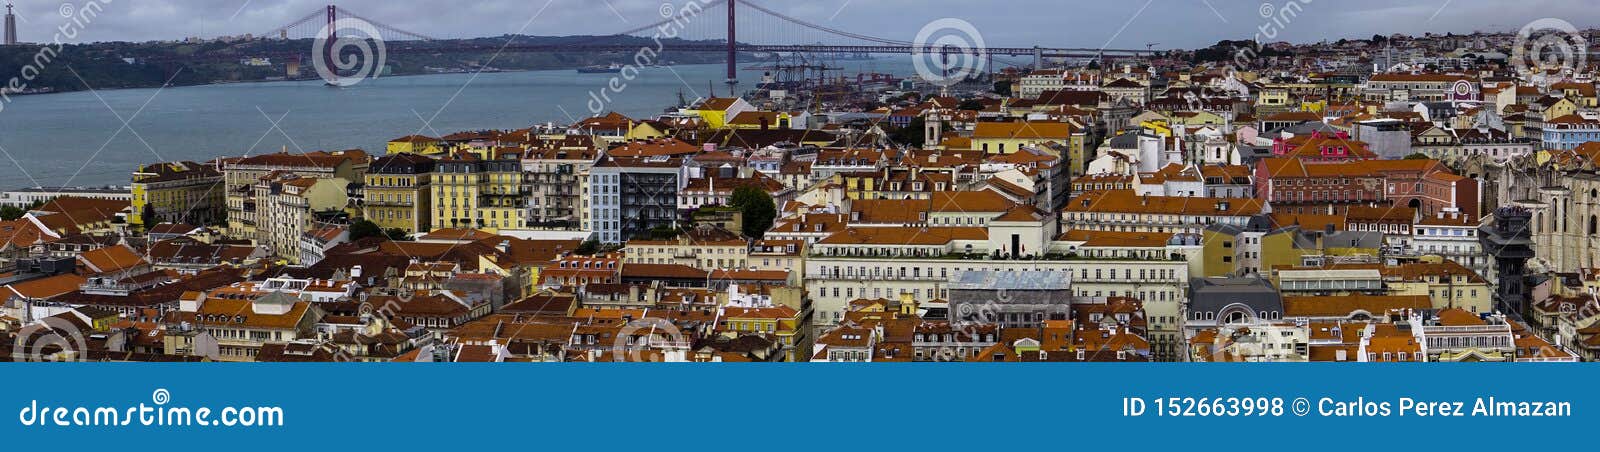 vista a la ciudad de lisboa, portugal. city view of lisbon, portugal